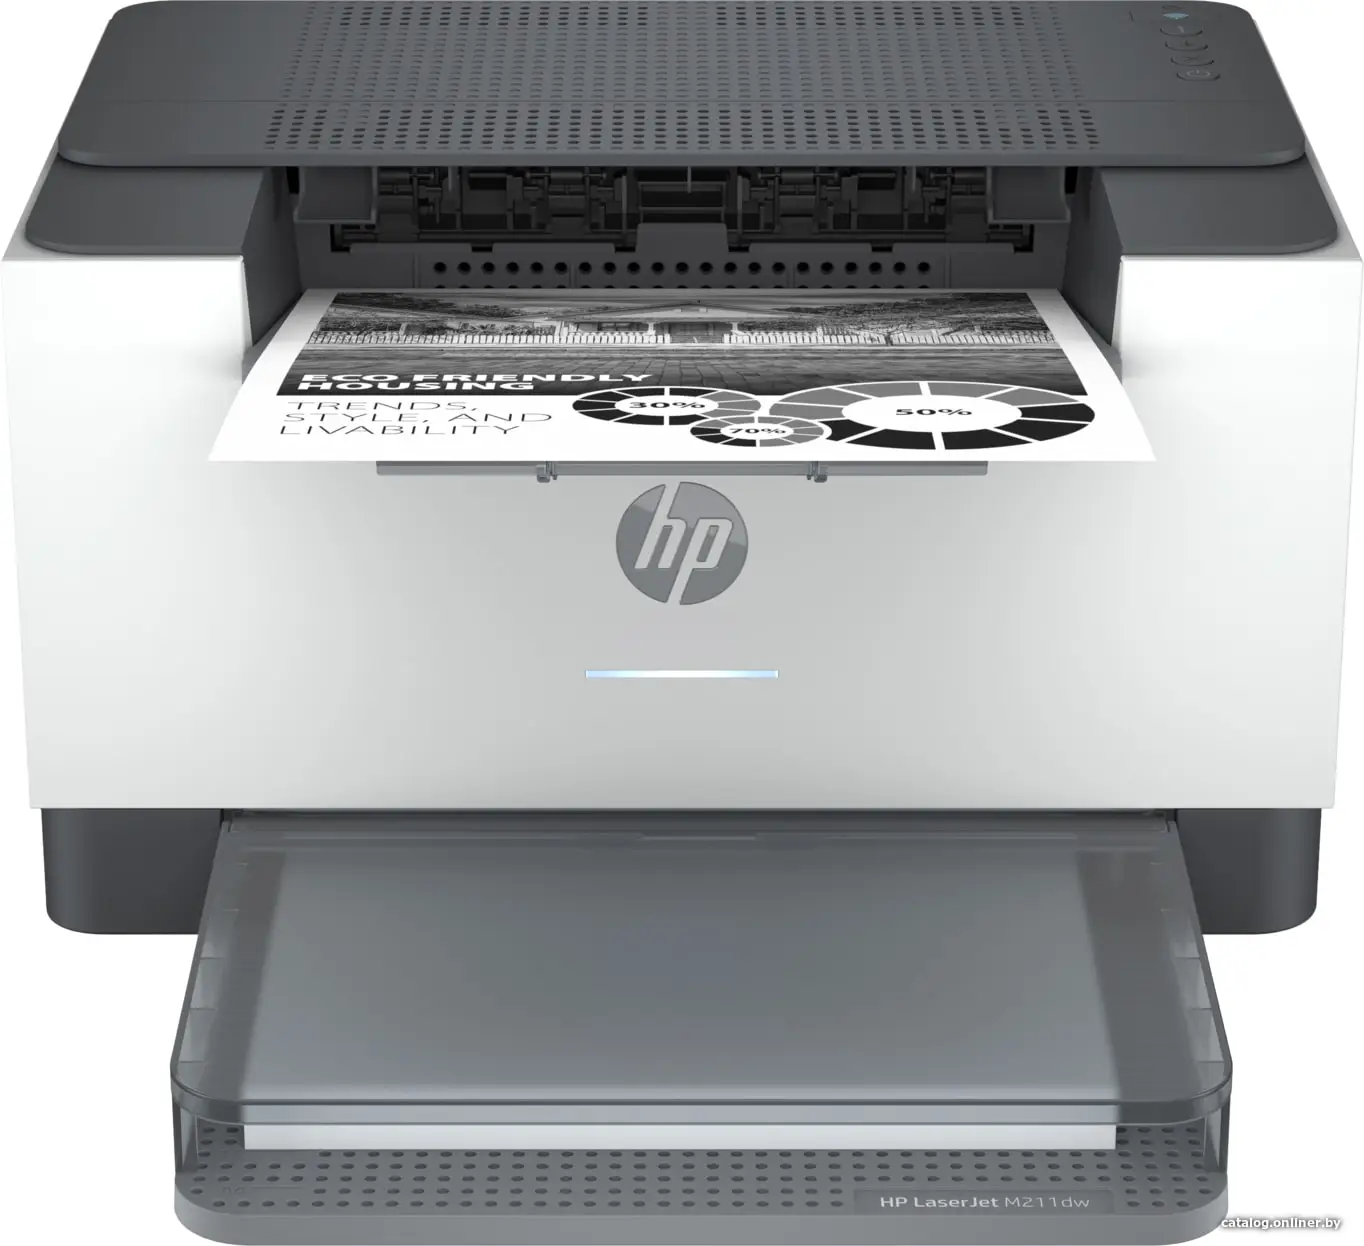 Купить Принтер HP LaserJet M211dw, цена, опт и розница